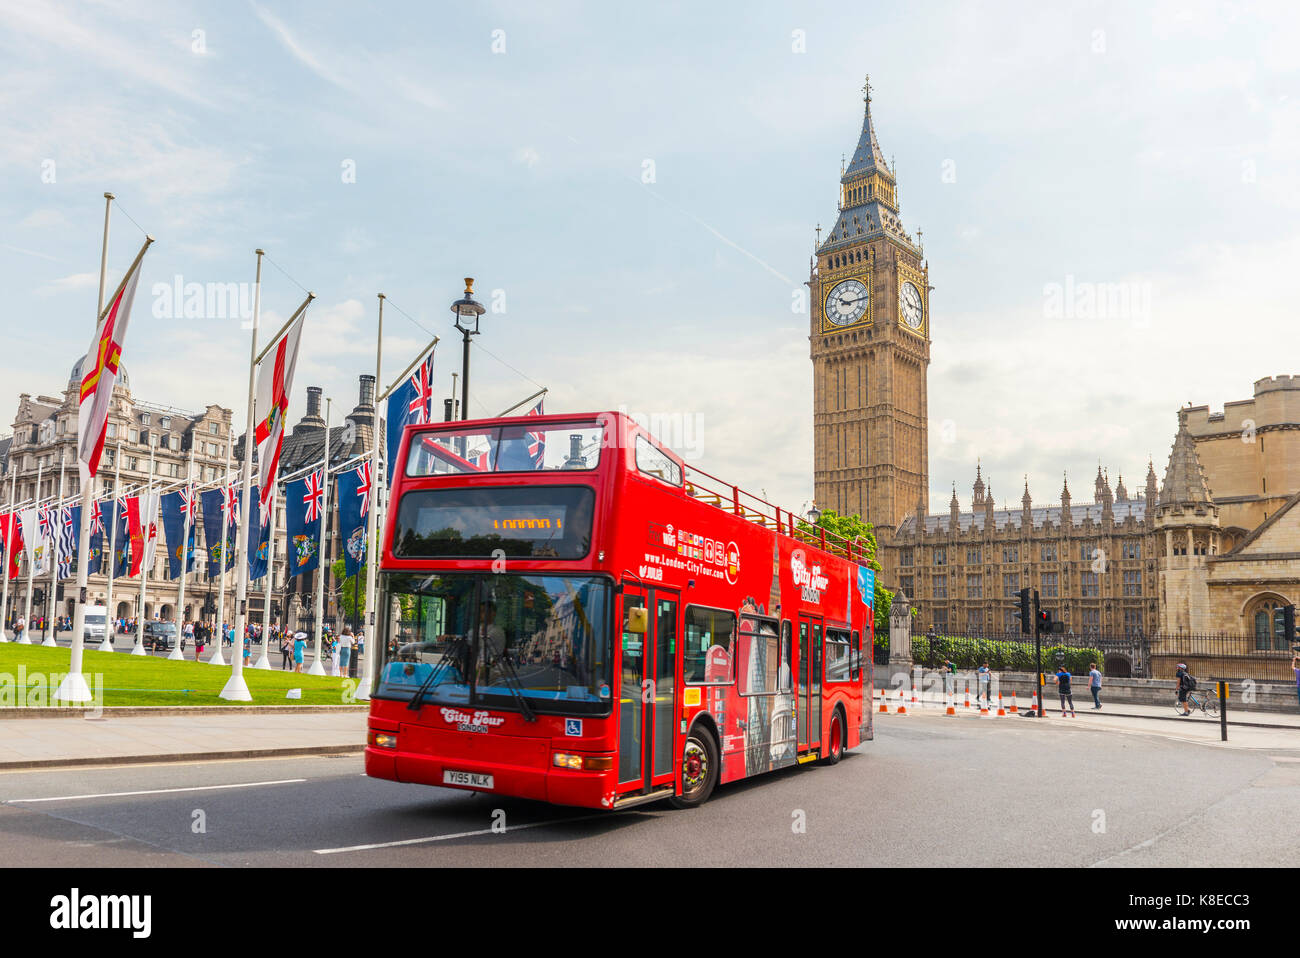 Autobús de dos pisos, el palacio de Westminster, casas del parlamento, el Big Ben, la ciudad de Westminster, Londres, Inglaterra, Gran Bretaña Foto de stock